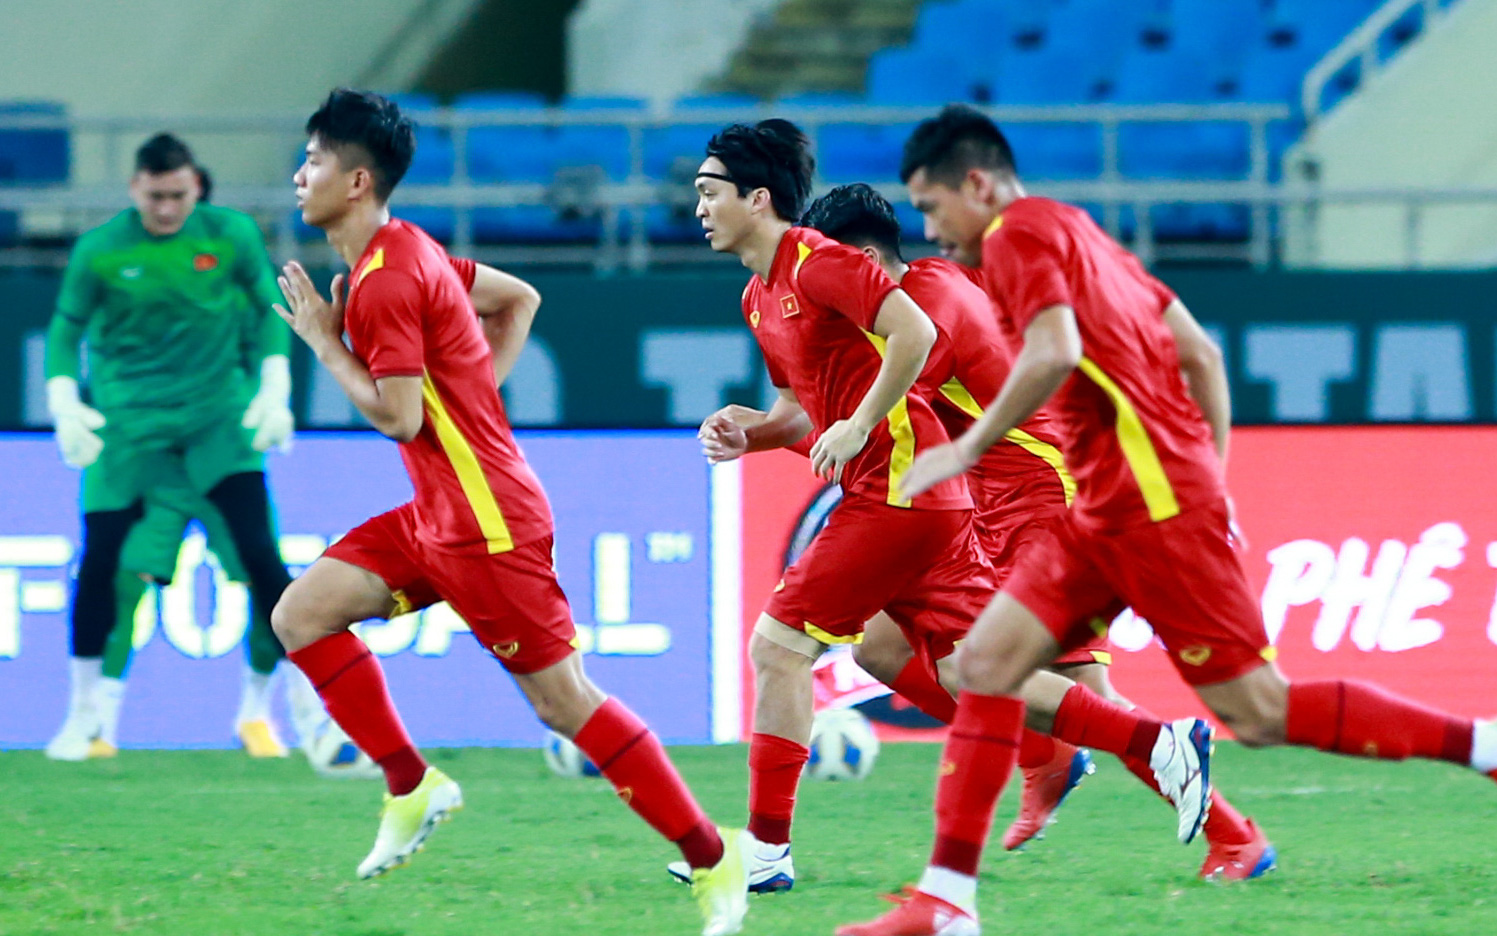 Tuyển Việt Nam có thể rơi 3 bậc trên bảng xếp hạng FIFA nếu thua tuyển Australia